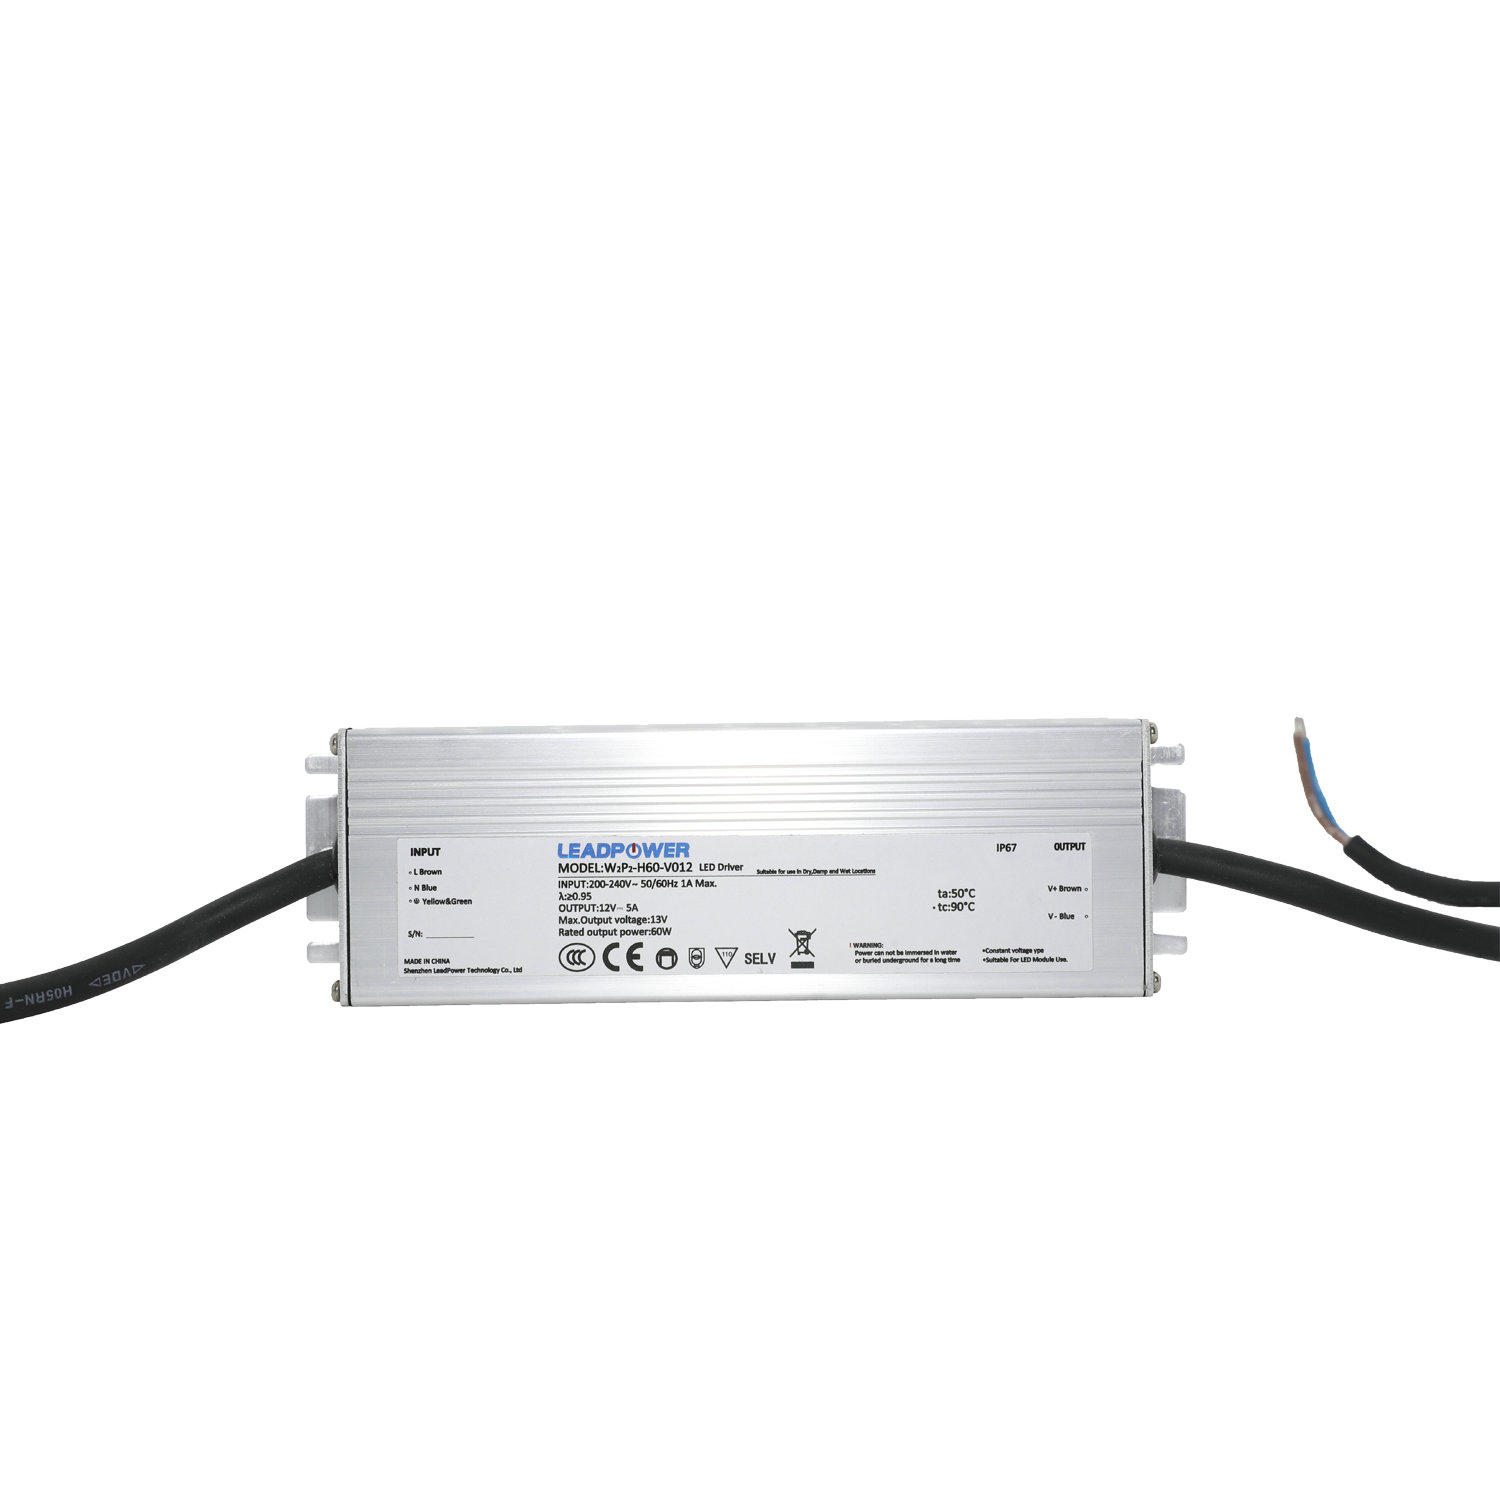 WBP-H60 Series  Waterproof LED Power Supply 